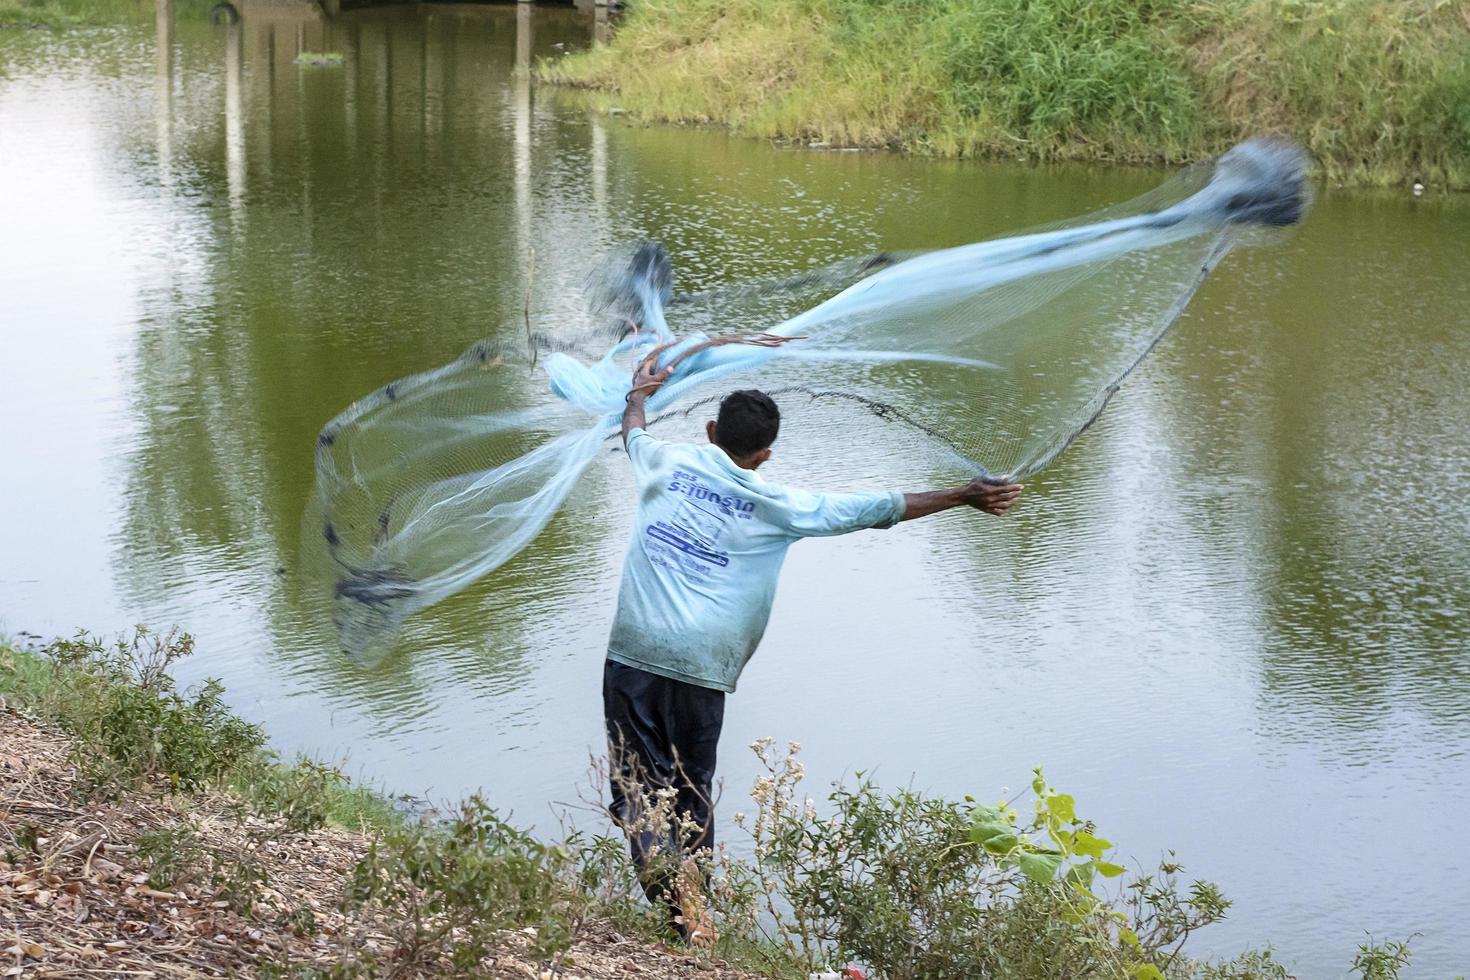 chaiyaphum, thailand - 12 apr 2015 - fiskare eller fiskare är någon som fångar fisk och andra djur från en vattenkropp eller plockar skaldjur. för vissa samhällen. foto